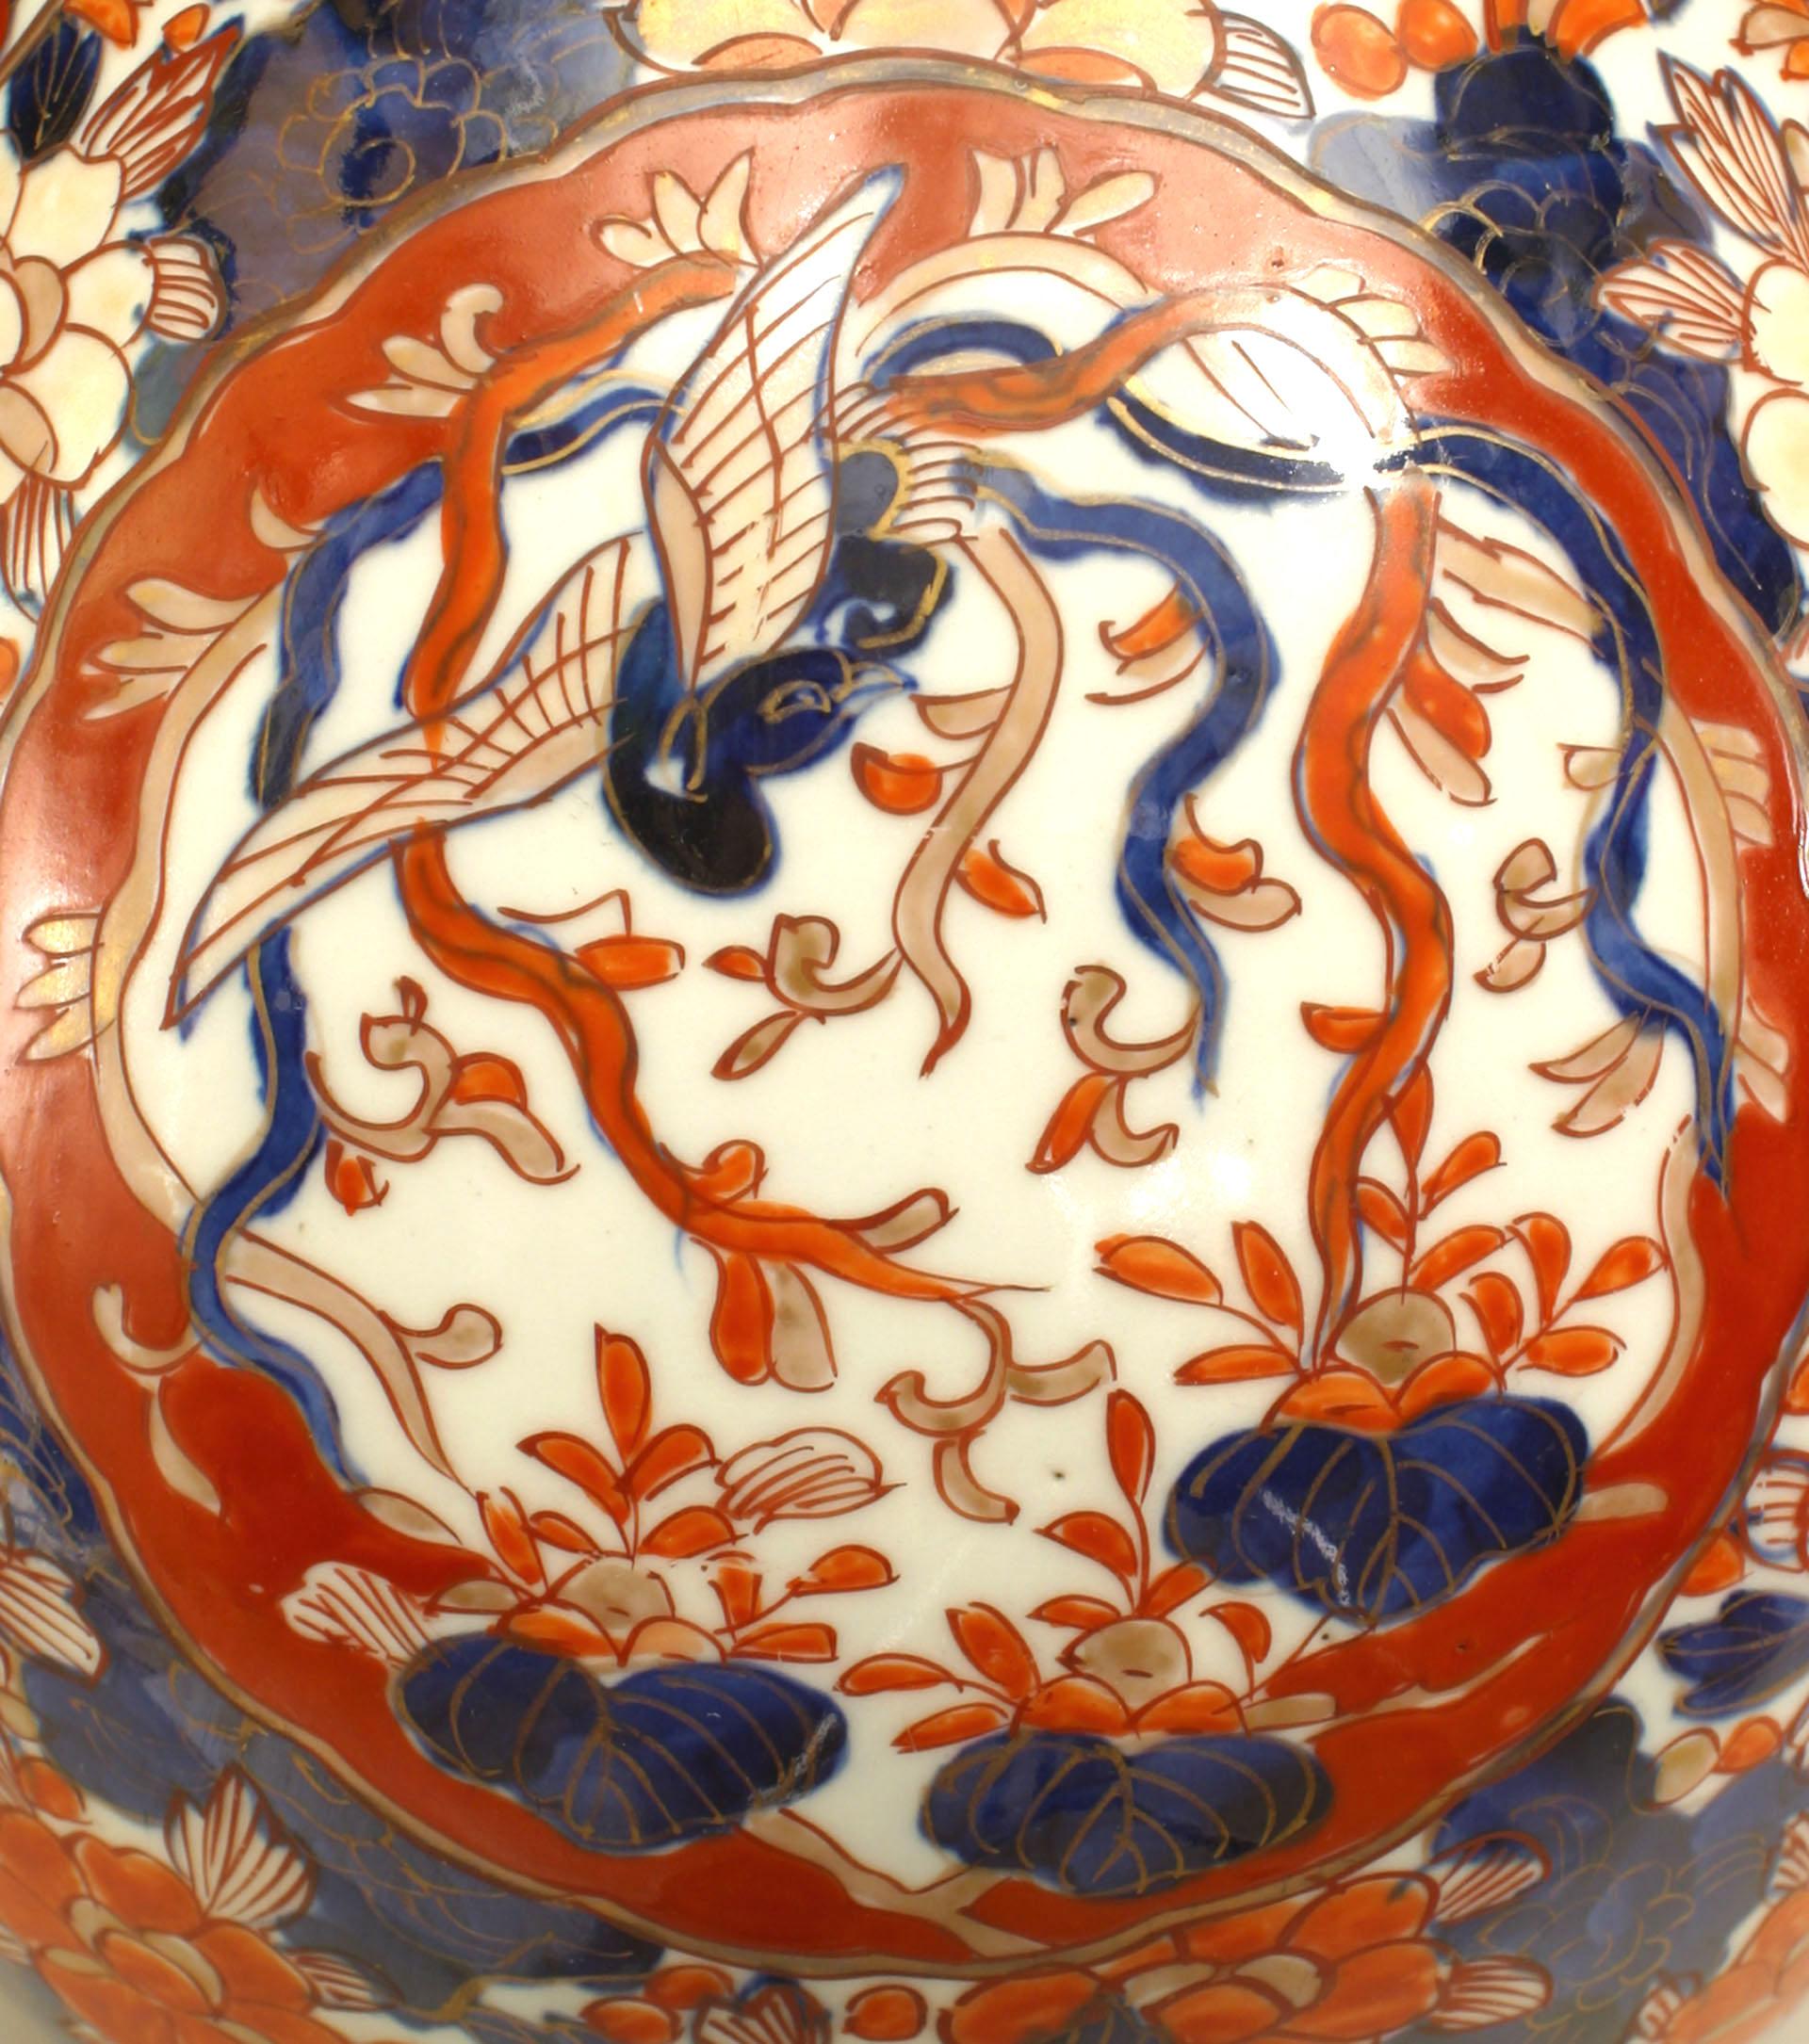 Paire de vases en porcelaine japonaise Imari du 19e siècle, à col élancé, représentant des motifs floraux et d'oiseaux dans des tons de rouge et de cobalt.